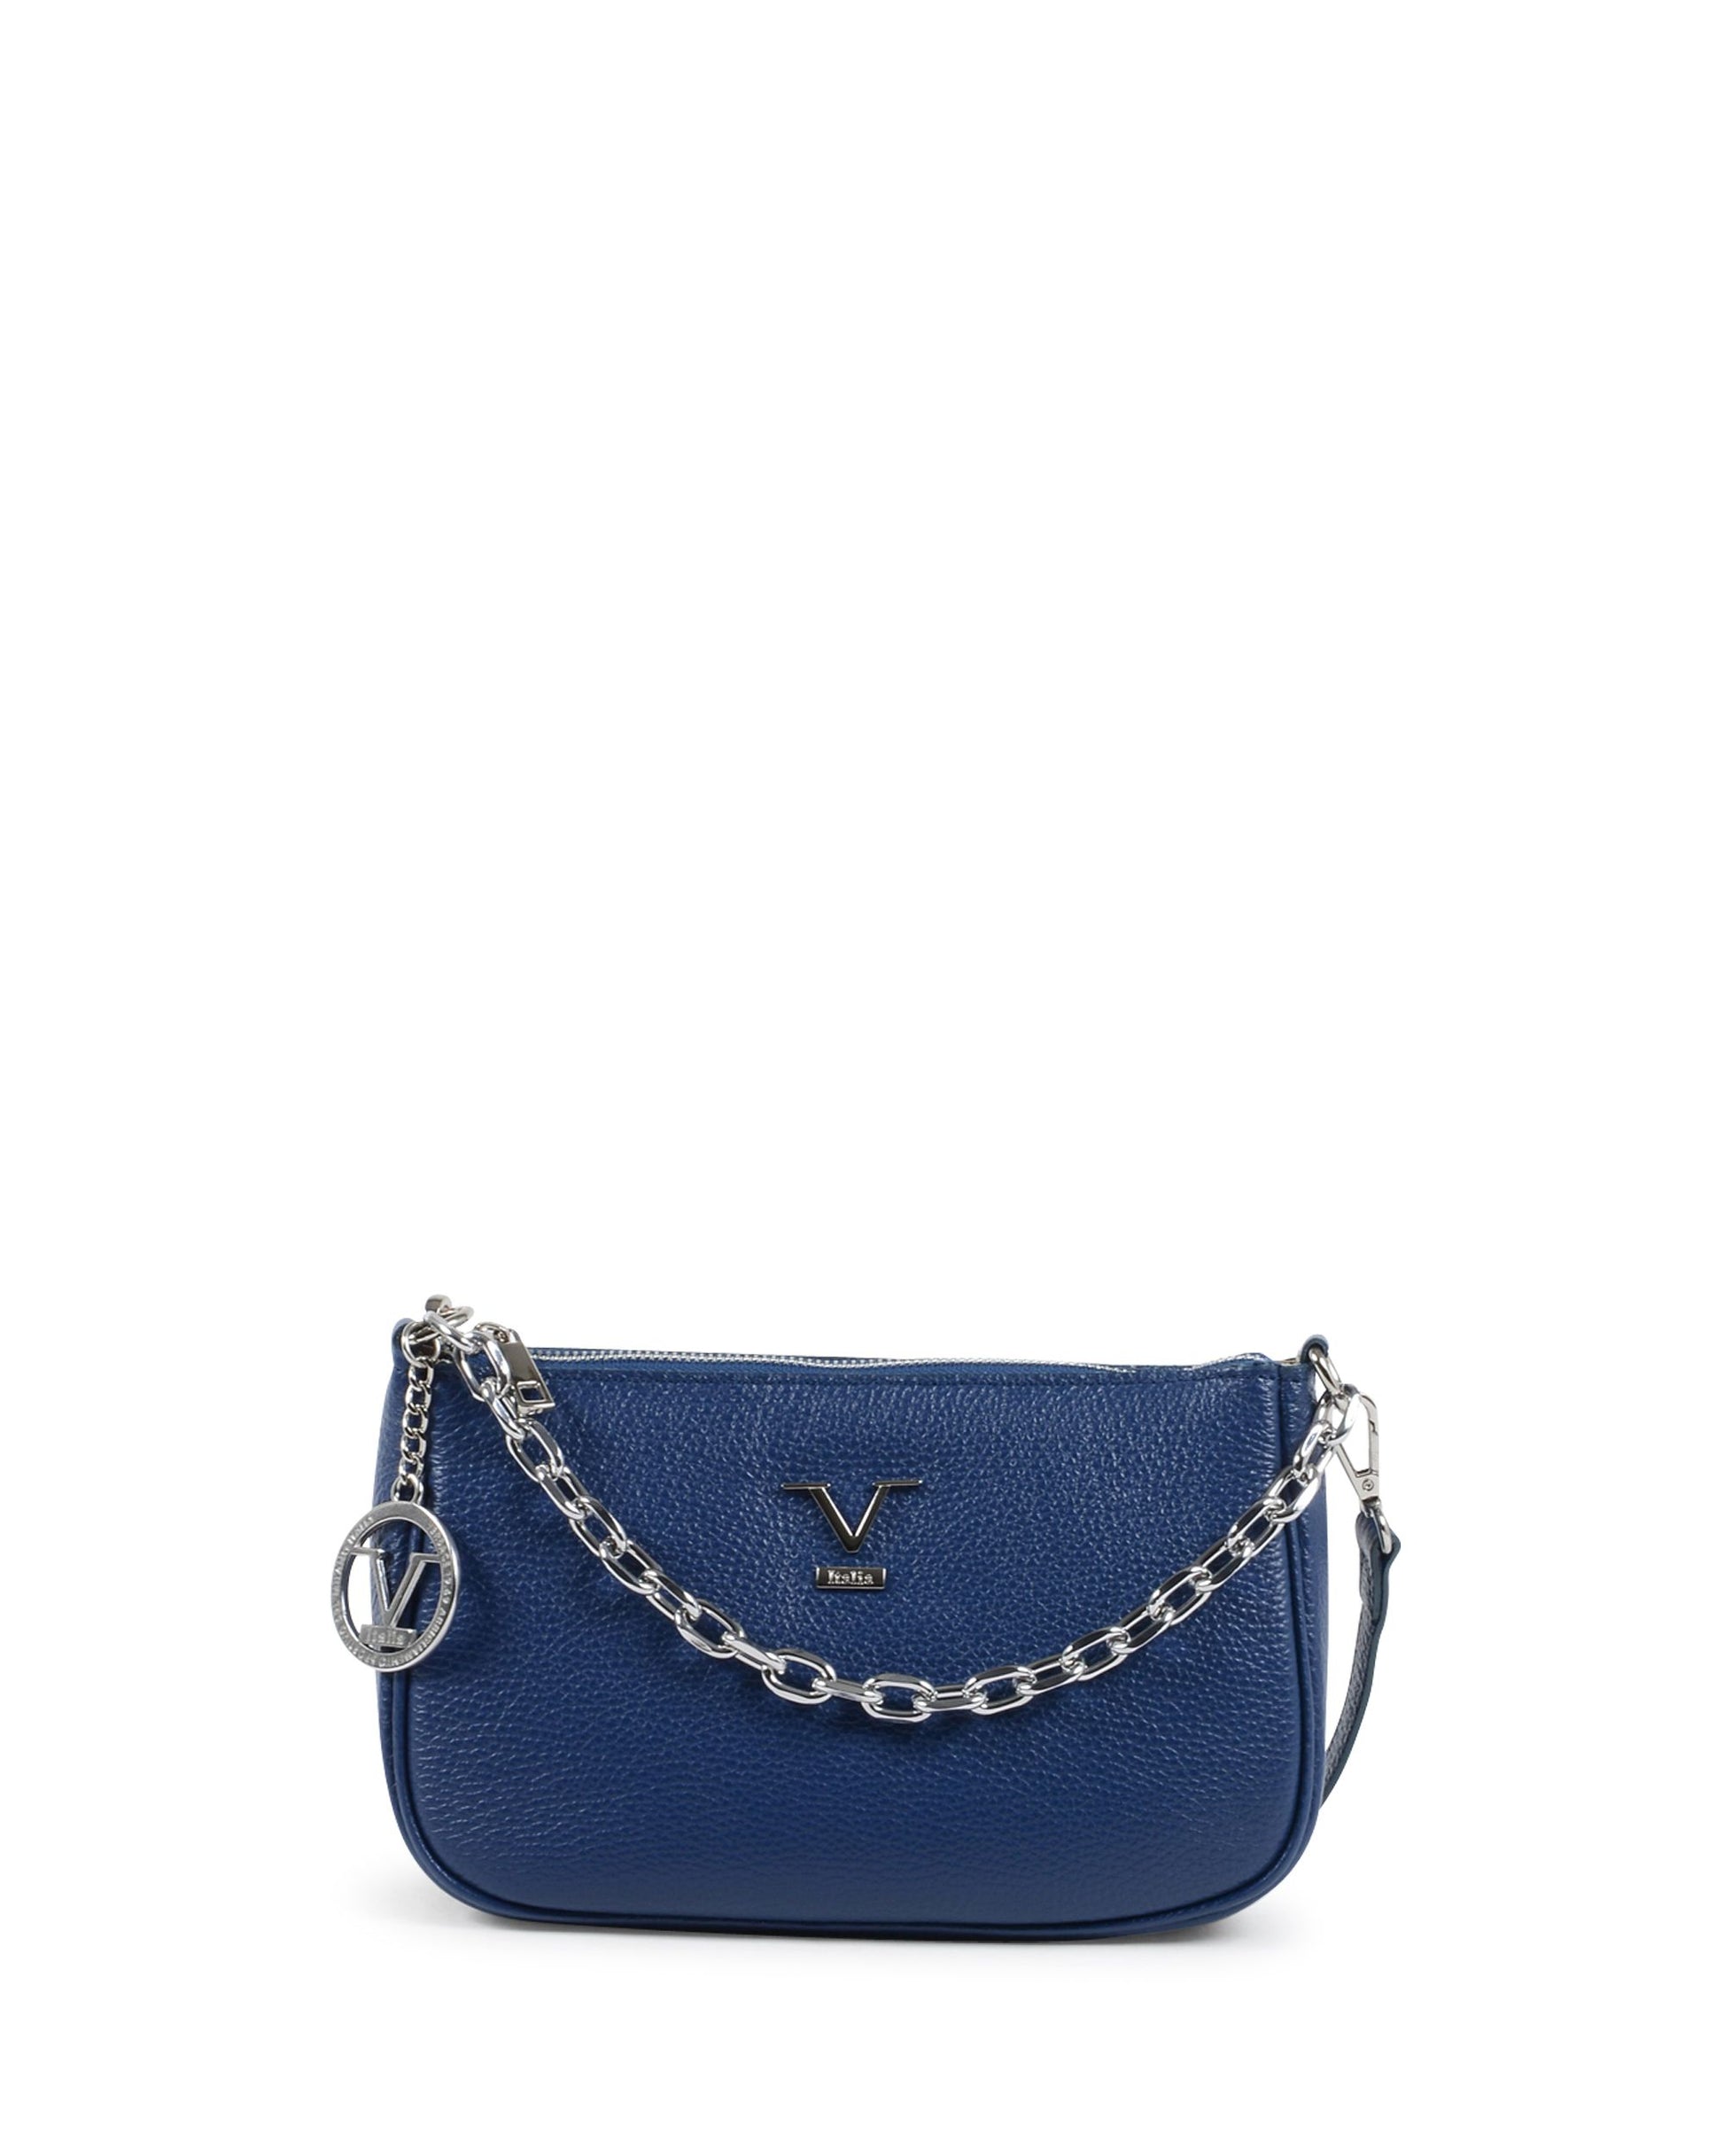 19V69 Italia Womens Mini Bag Blue VE1735 CERVO BLUE JEANS